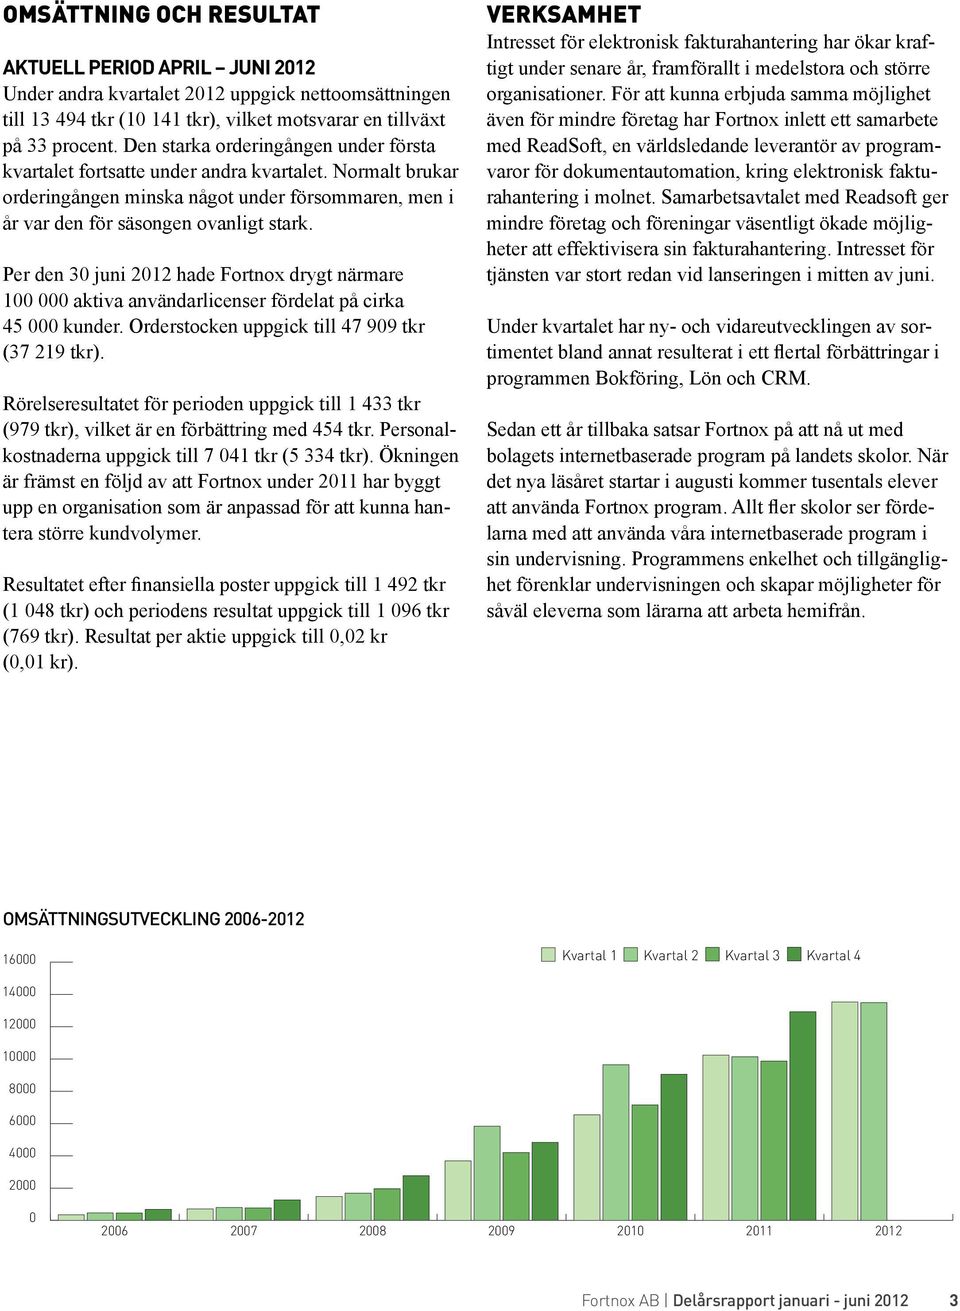 Per den 30 juni 2012 hade Fortnox drygt närmare 100 000 aktiva användarlicenser fördelat på cirka 45 000 kunder. Orderstocken uppgick till 47 909 tkr (37 219 tkr).